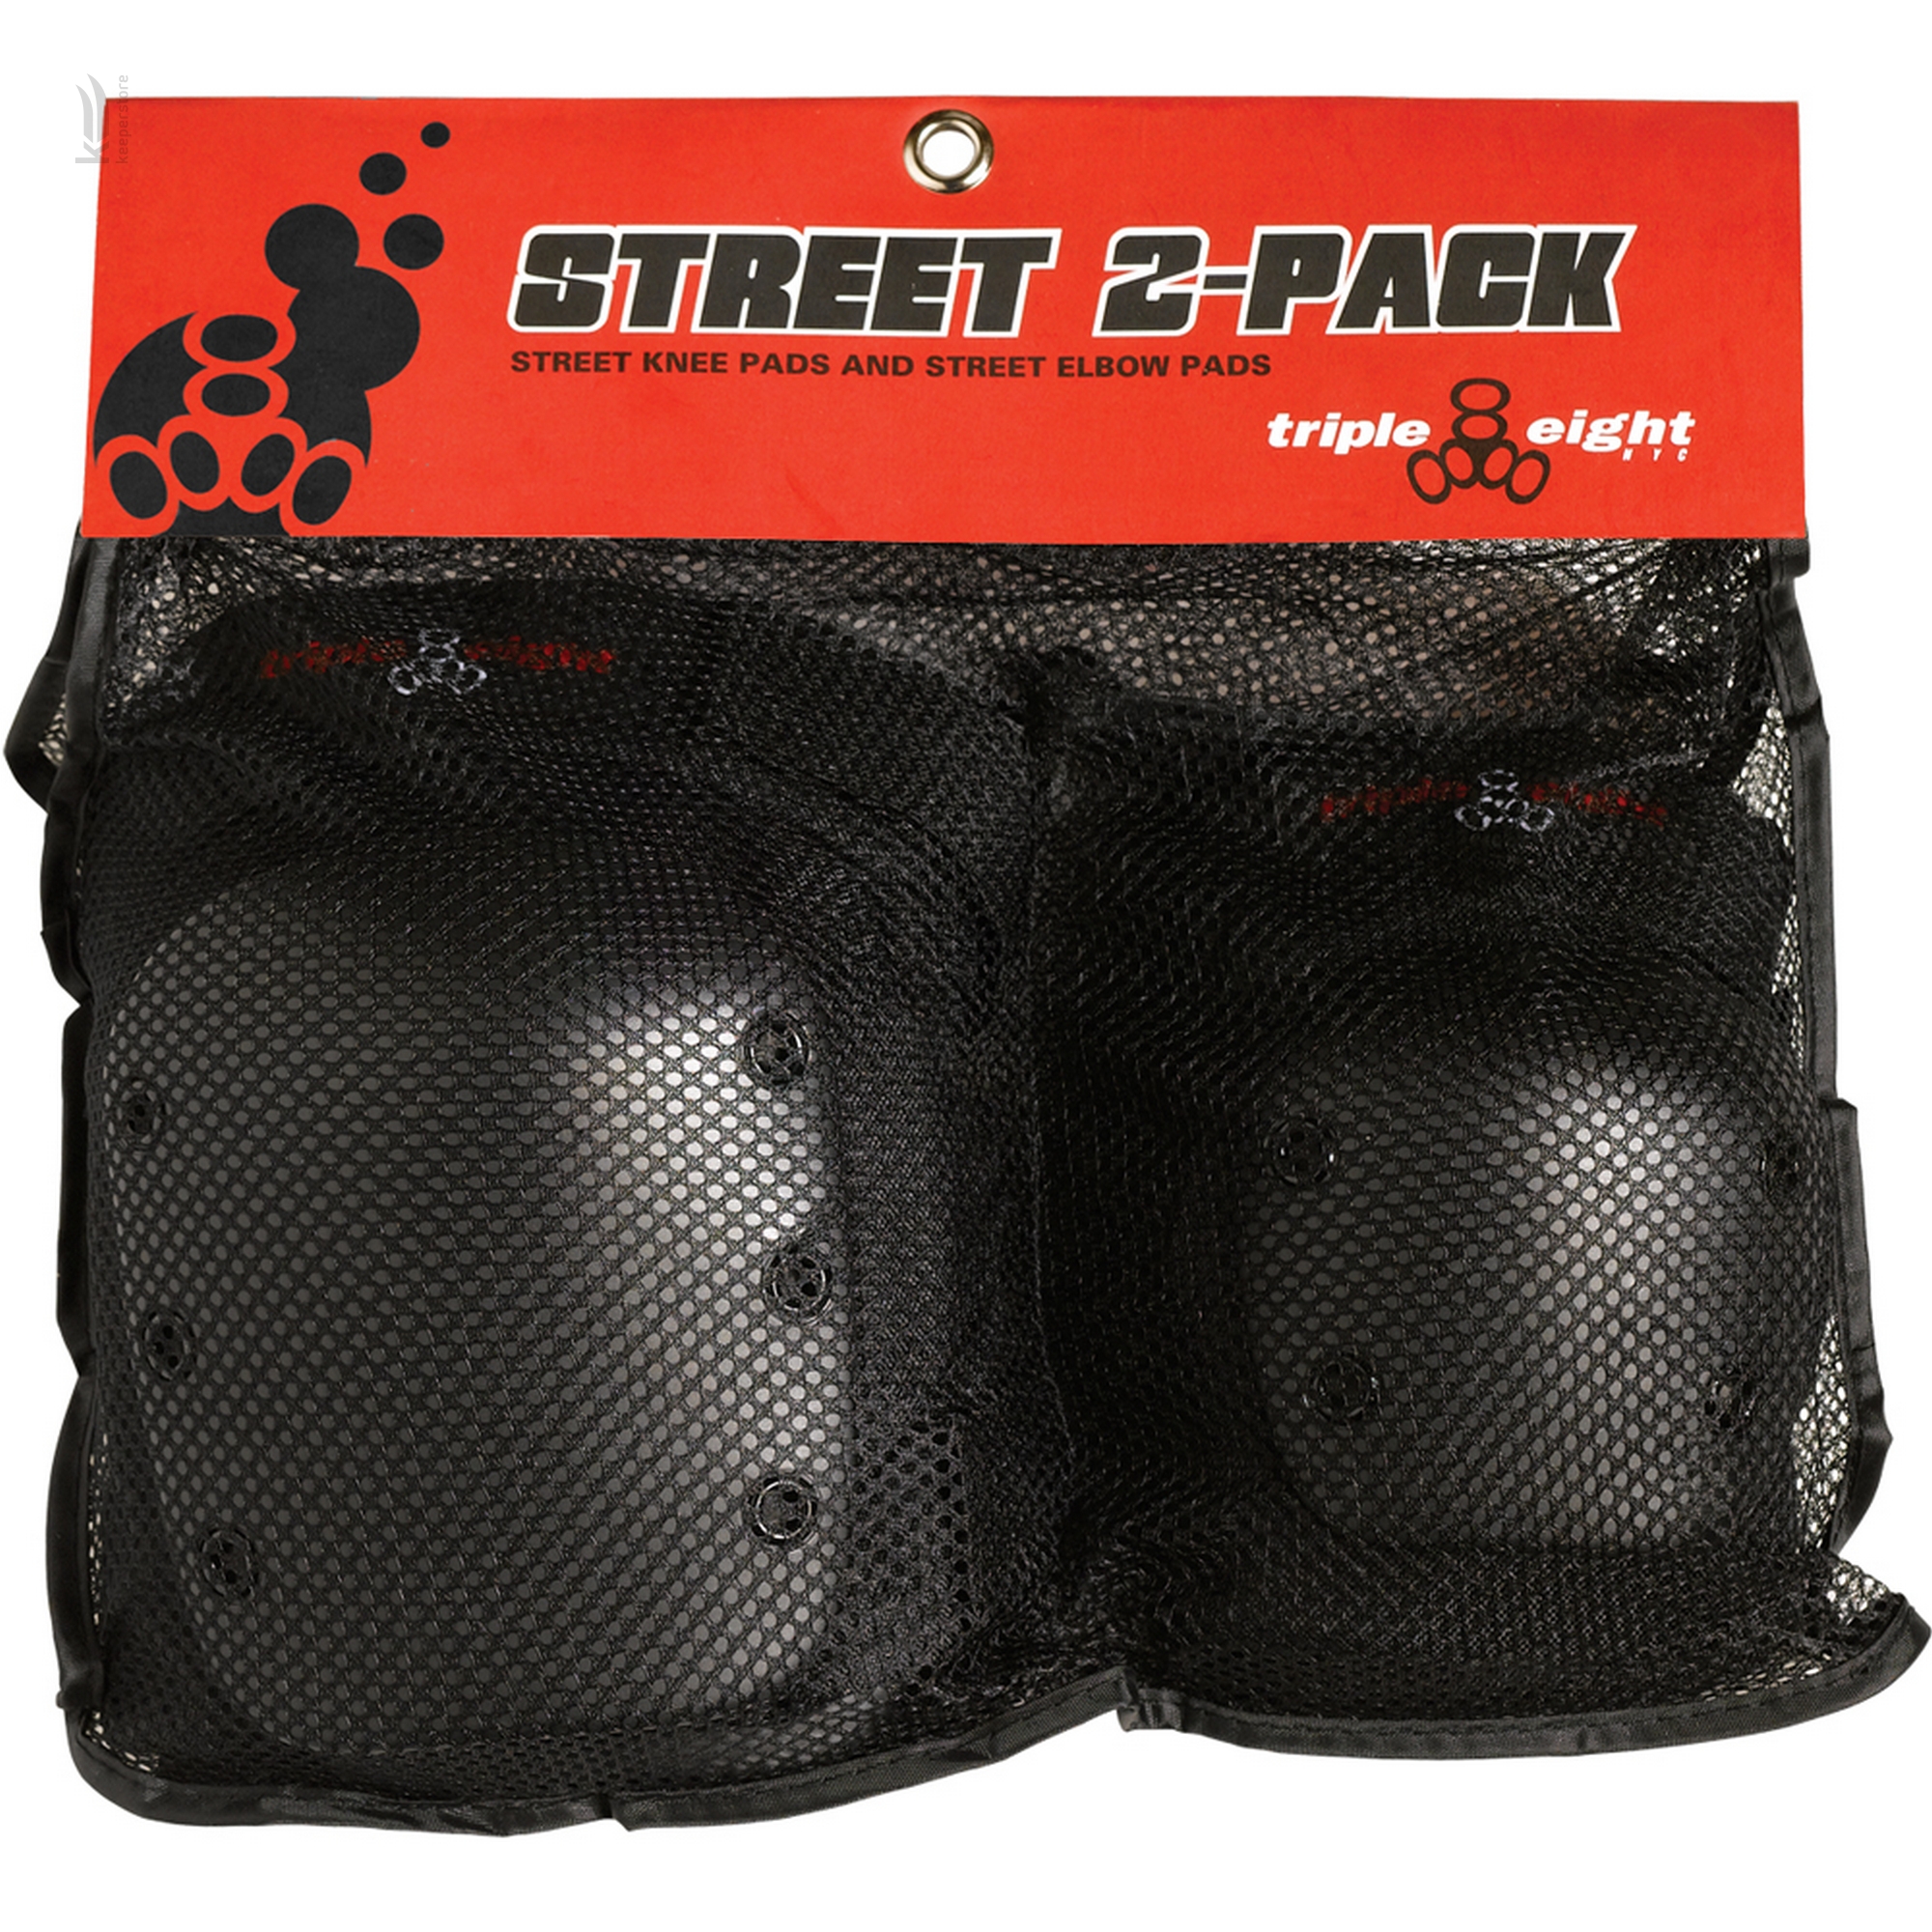 Захист для велосипедиста Triple8 Street 2-Pack (L)